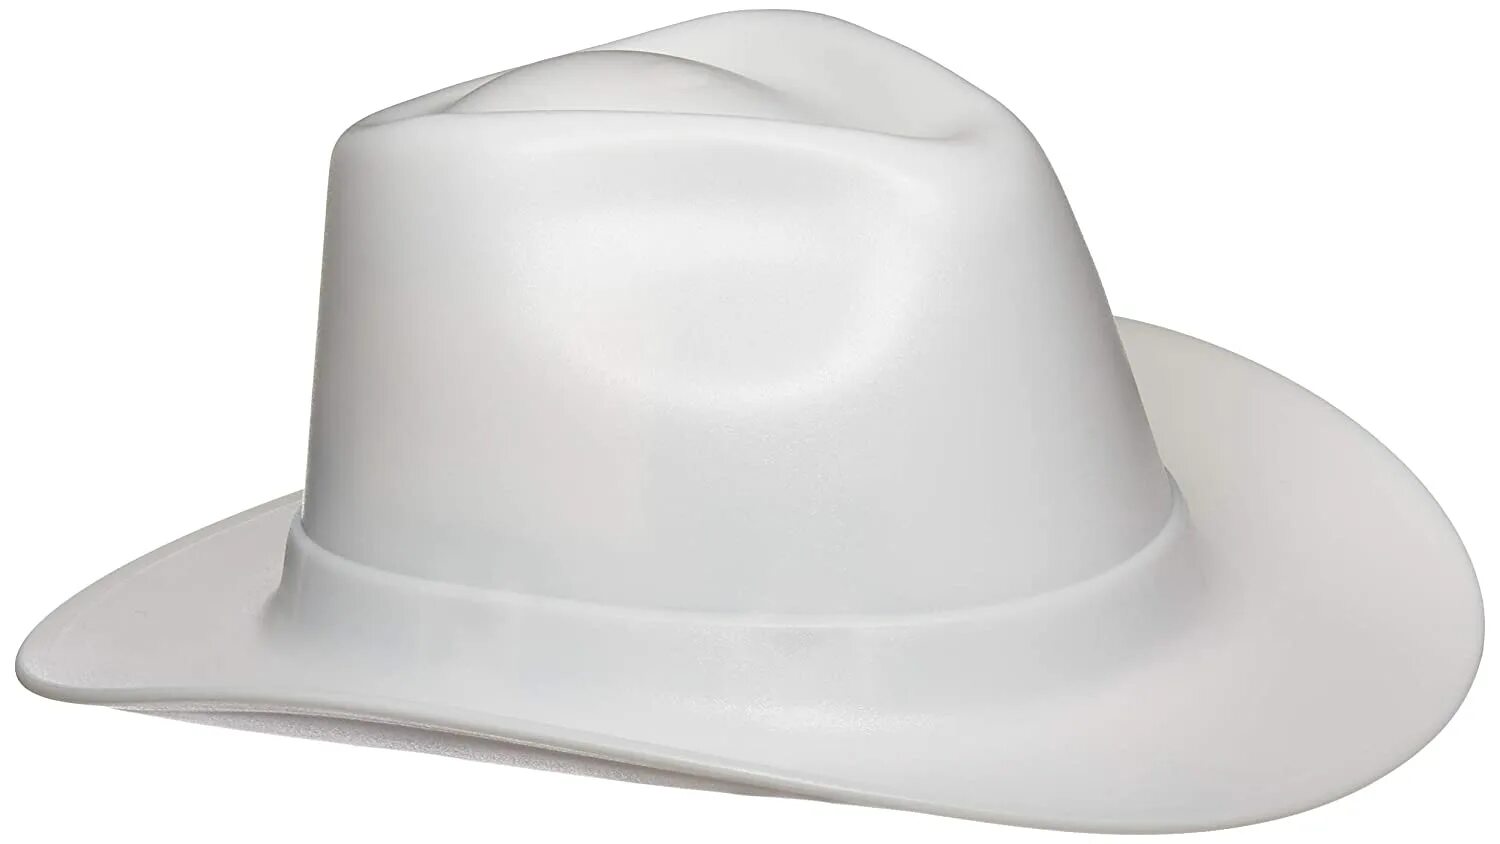 Купить каску шляпу строительную. Vulka vcb100-00 hard hat строительная. Ковбойская шляпа. Белая ковбойская шляпа. Каска шляпа.